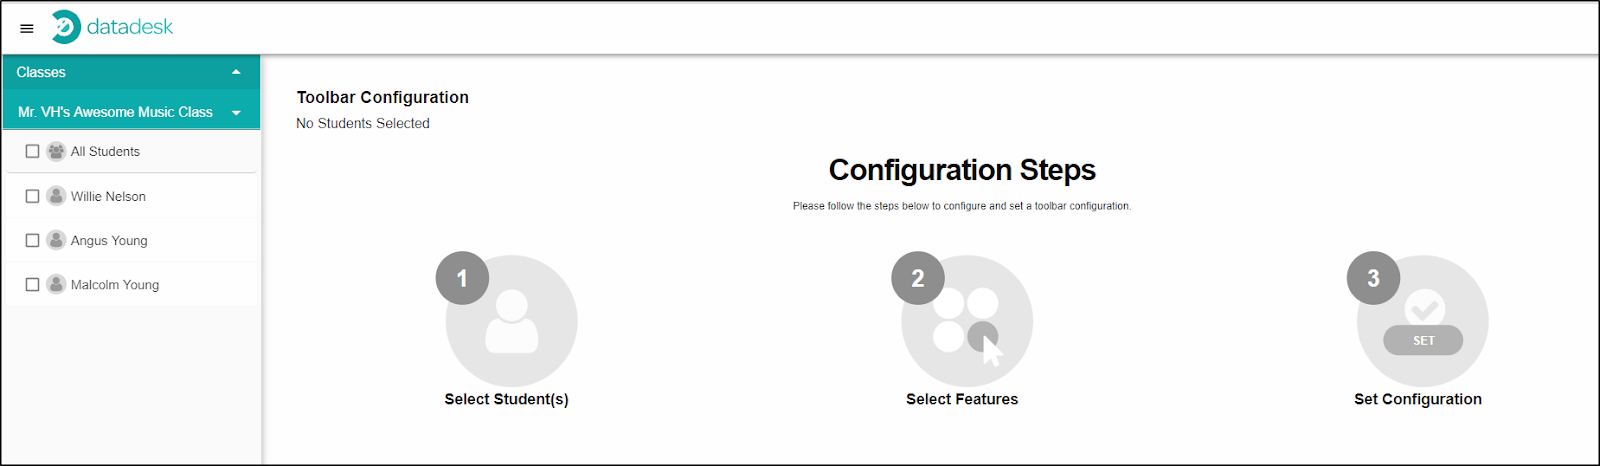 Configuration Steps